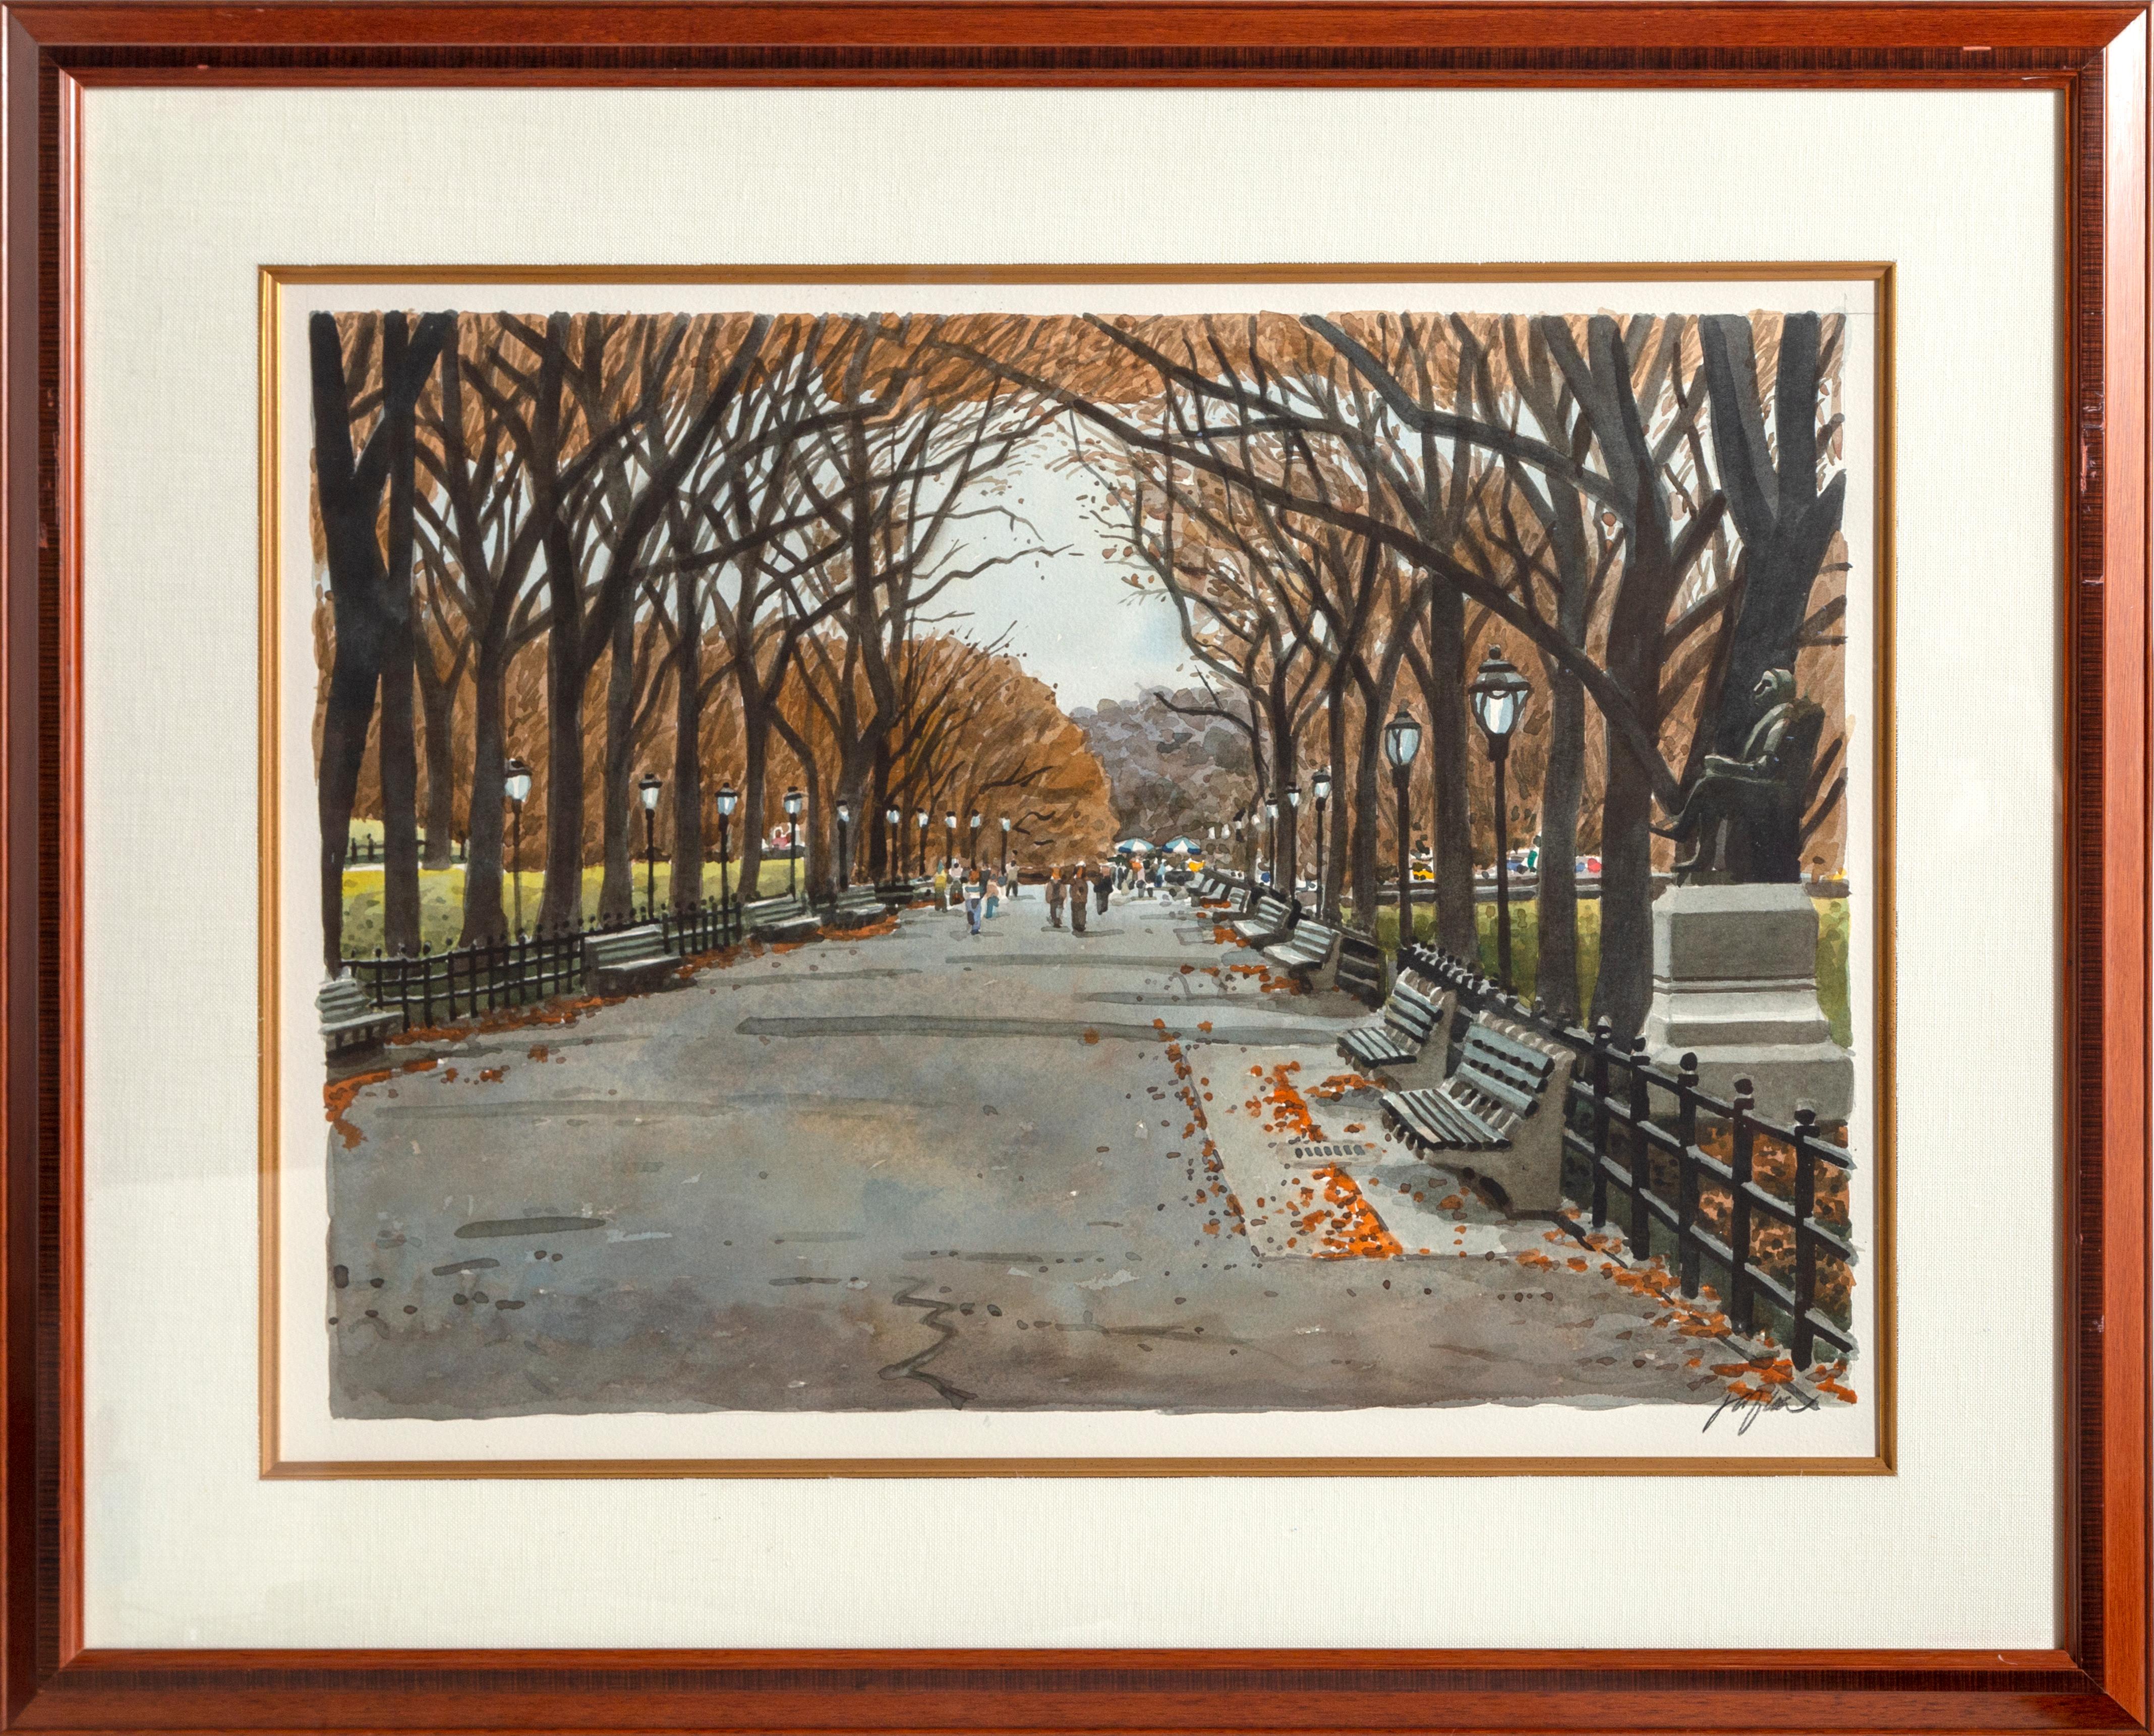 Unknown Landscape Art – Central Park im Herbst, gerahmte fotorealistische Aquarellmalerei